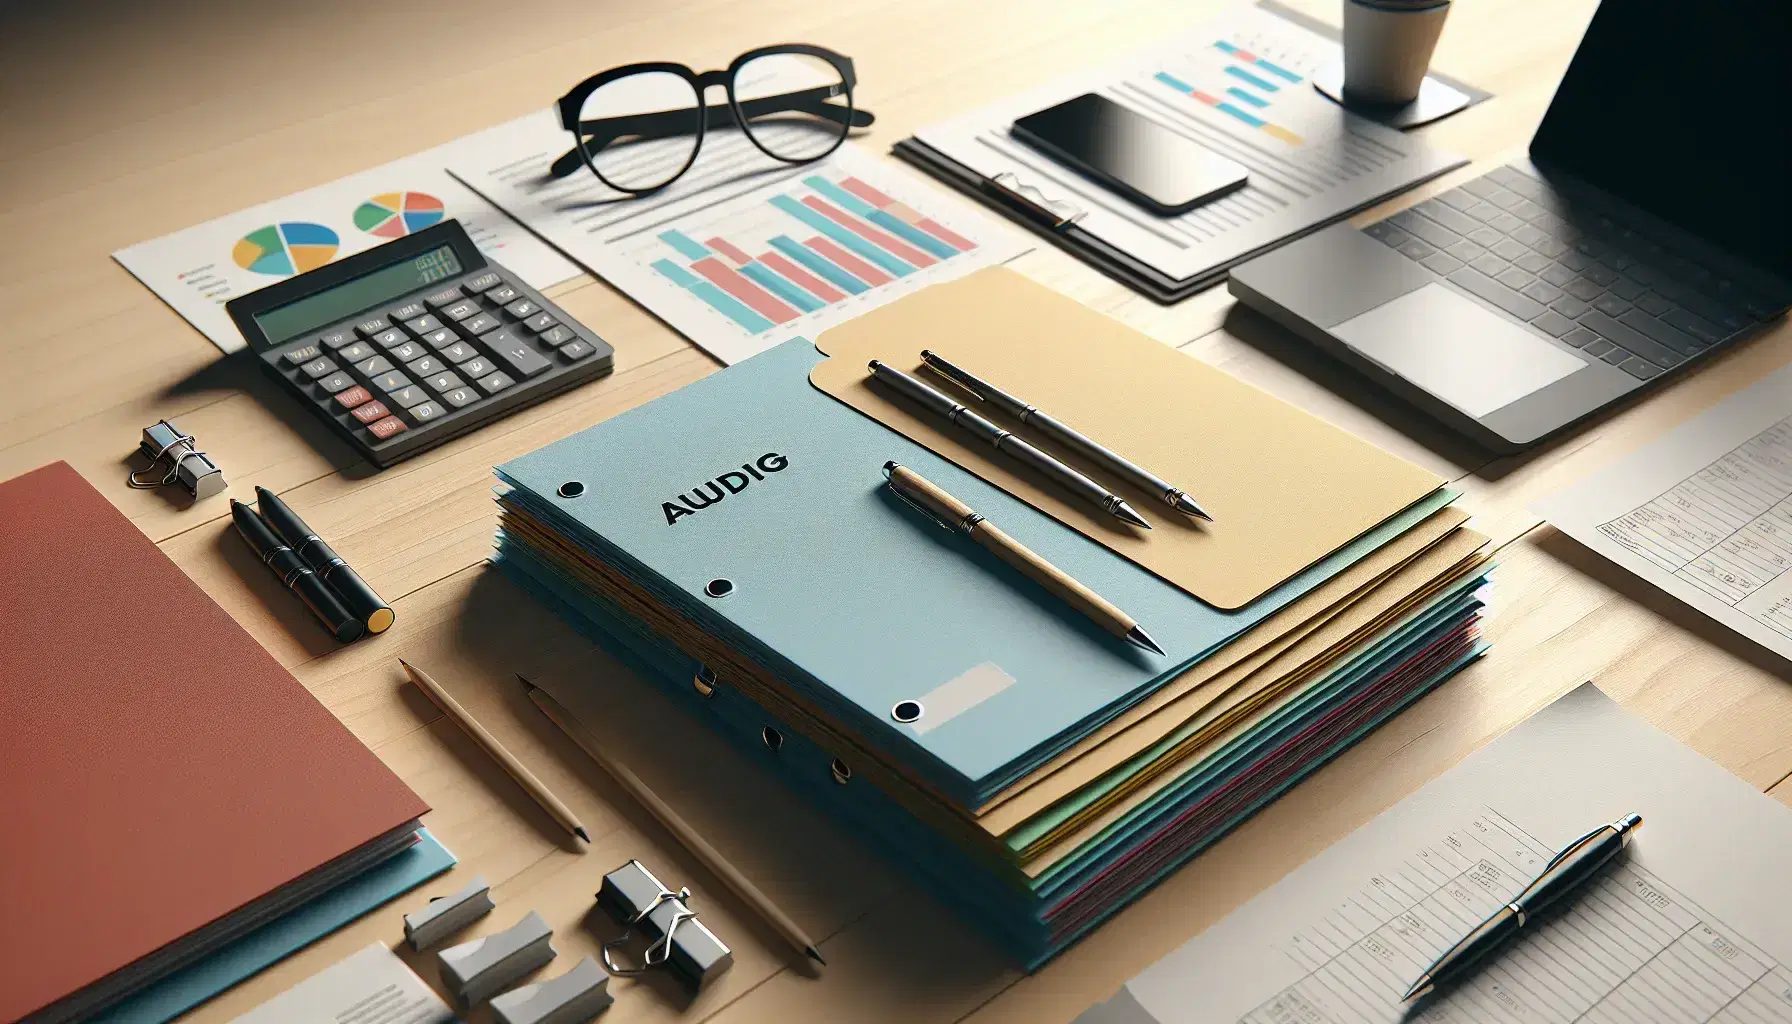 Escritorio de oficina con carpetas de colores, calculadora, lápices, bolígrafo y gafas, con un portátil al fondo en un ambiente de trabajo organizado.